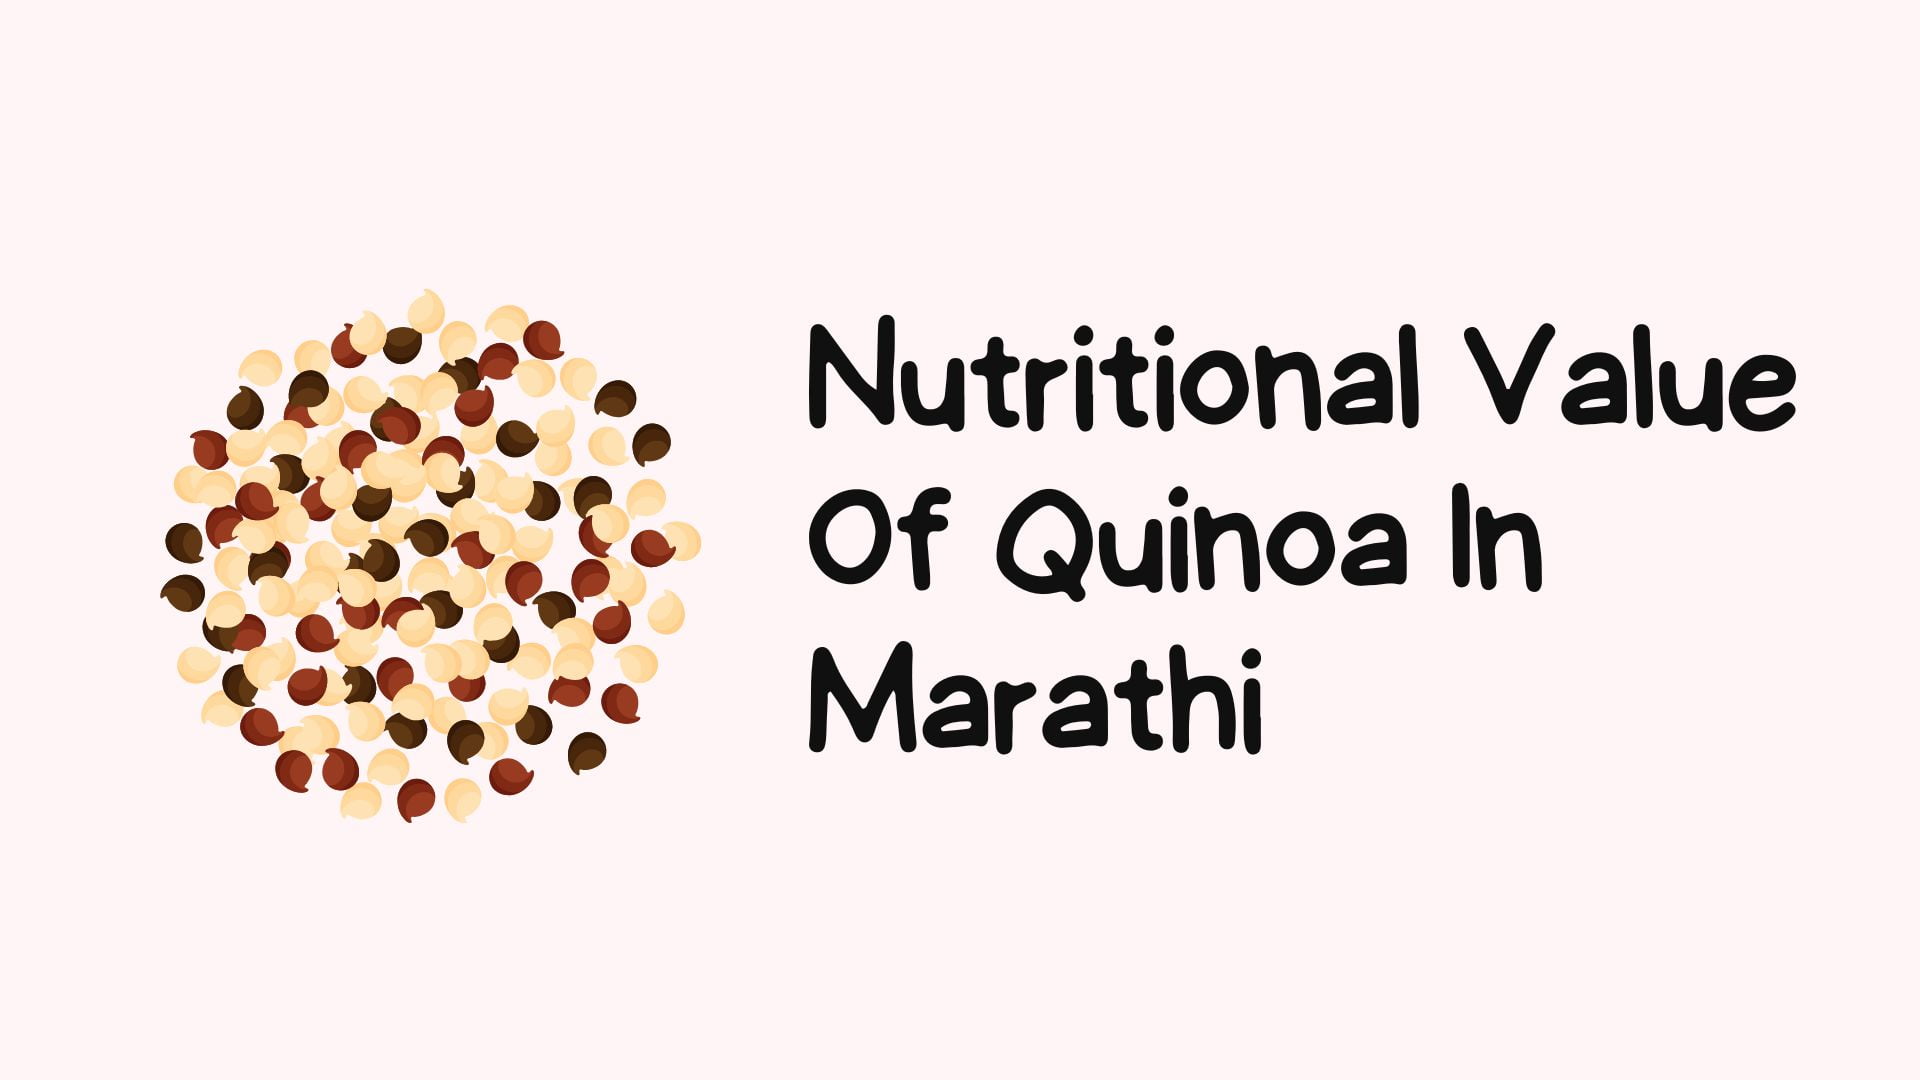 Nutritional Value Of Quinoa In Marathi